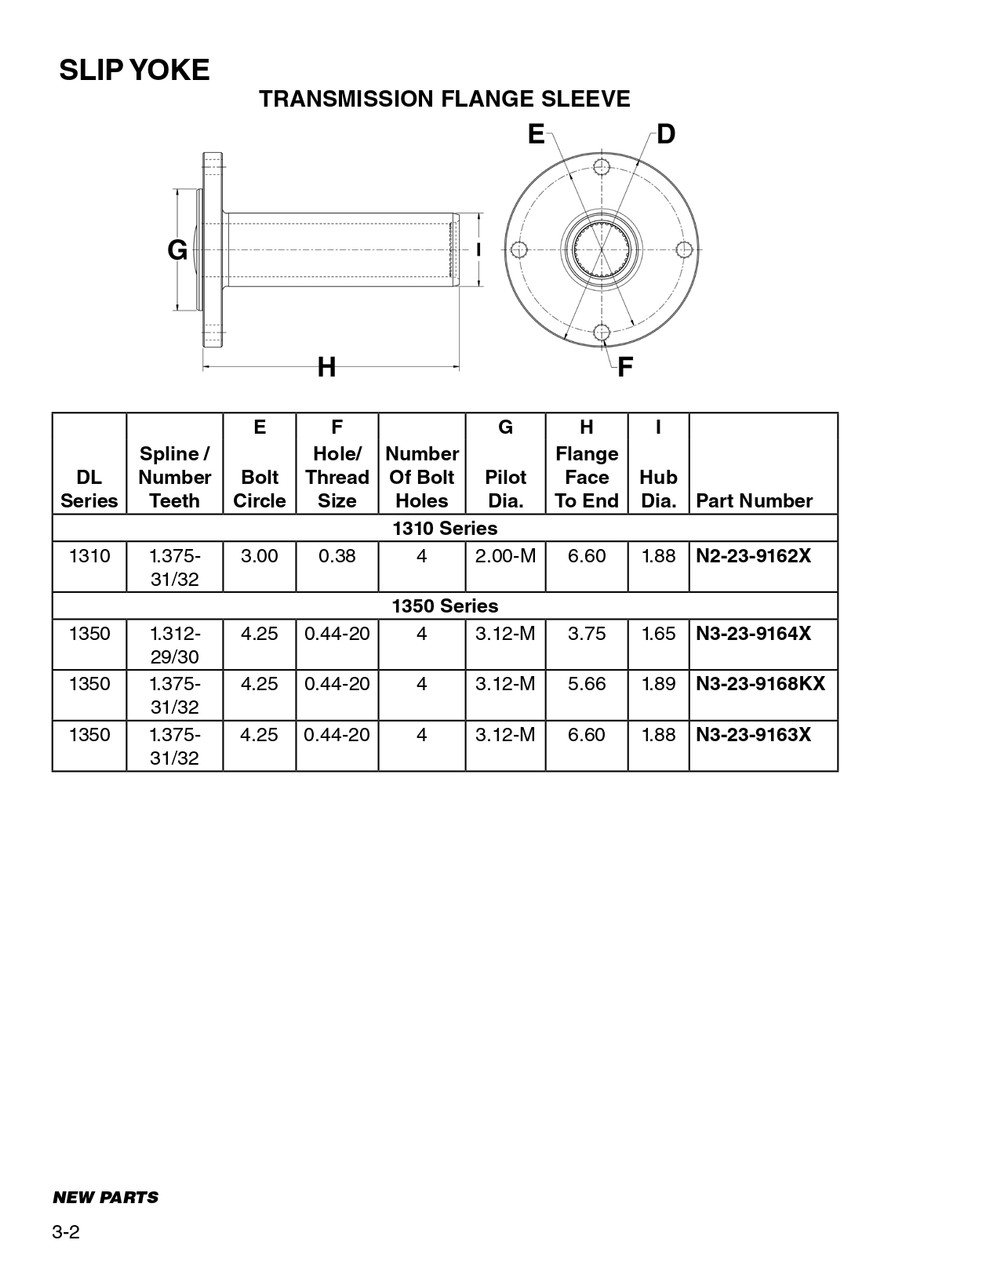 4.250" Bolt Circle 31/32 Spline - Spicer® 1350 Series Transmission Flange Sleeve  N3-23-9163X